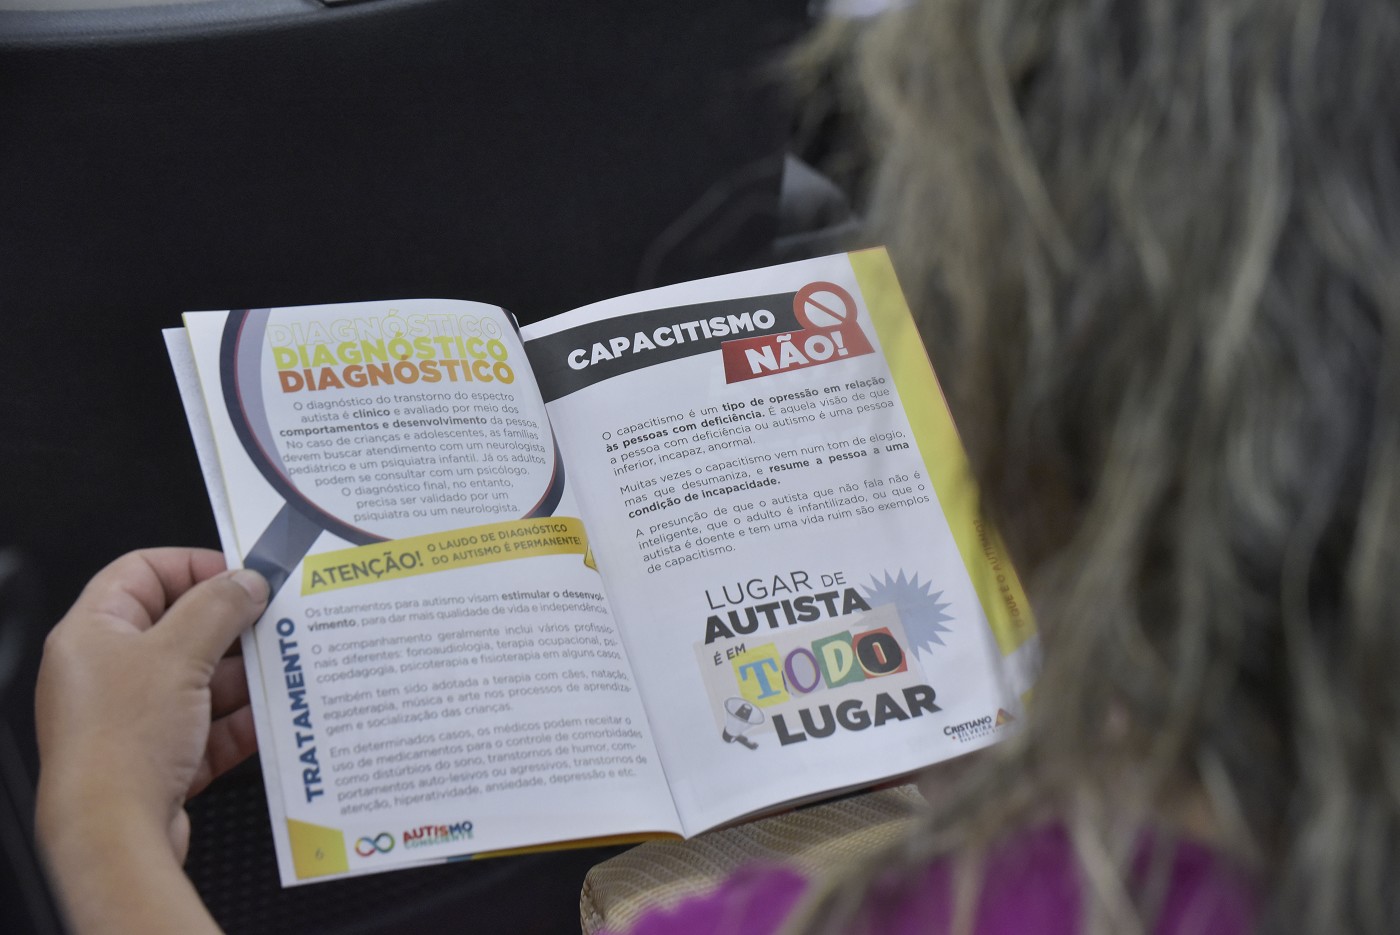 Comissão de Assuntos Municipais e Regionalização - debate sobre o municipalismo e a inclusão de pessoas com transtorno do espectro autista